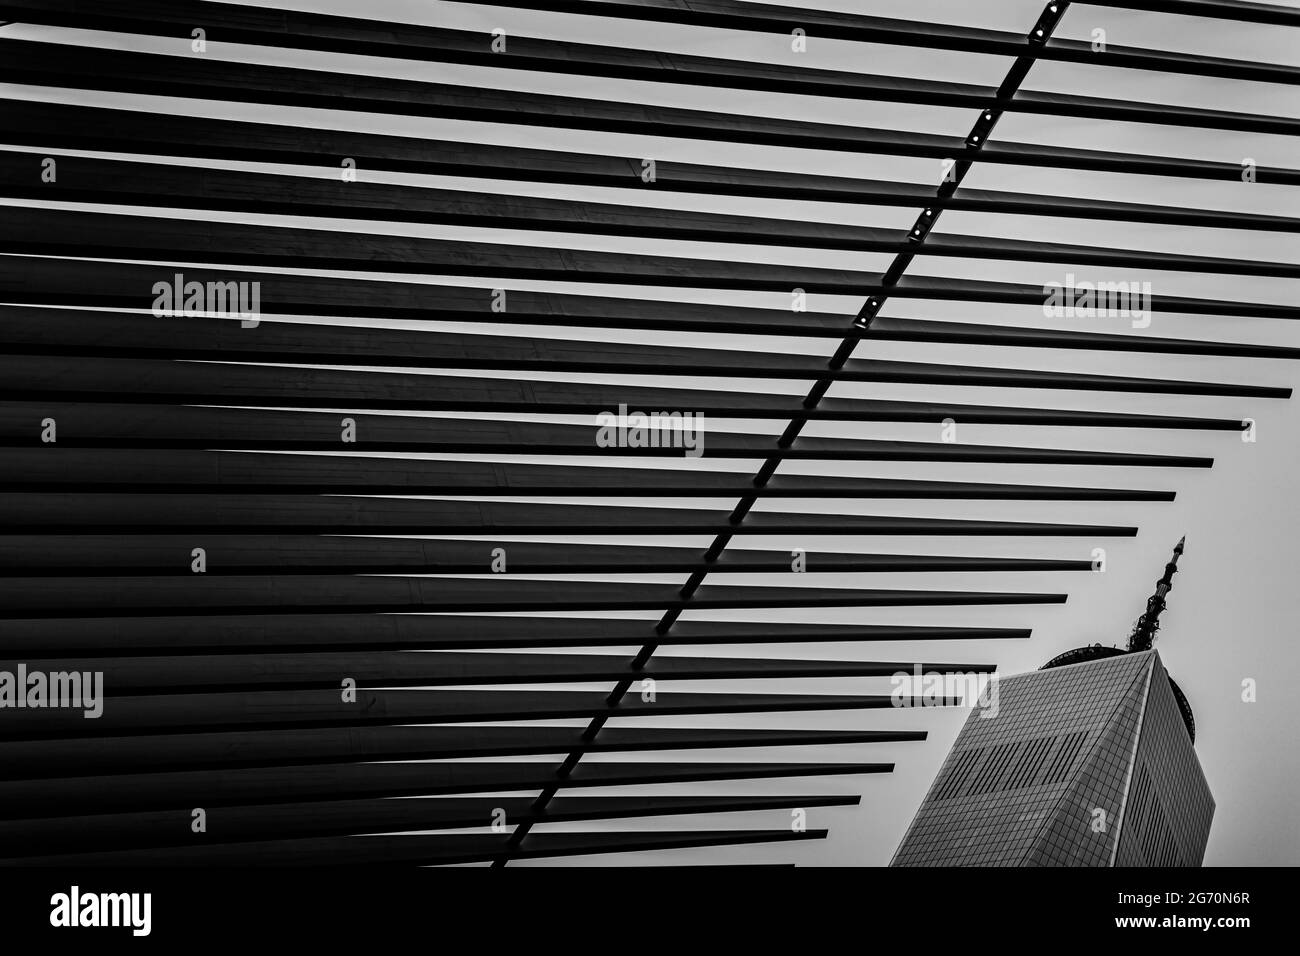 New York, USA. 9. Juli 2021. Während des New York City ePrix 2021, 6. Treffen der Formel-E-Weltmeisterschaft 2020-21, auf dem Brooklyn Street Circuit vom 10. Bis 11. Juli in New York, USA - Foto François Flamand / DPPI Credit: DPPI Media/Alamy Live News Stockfoto